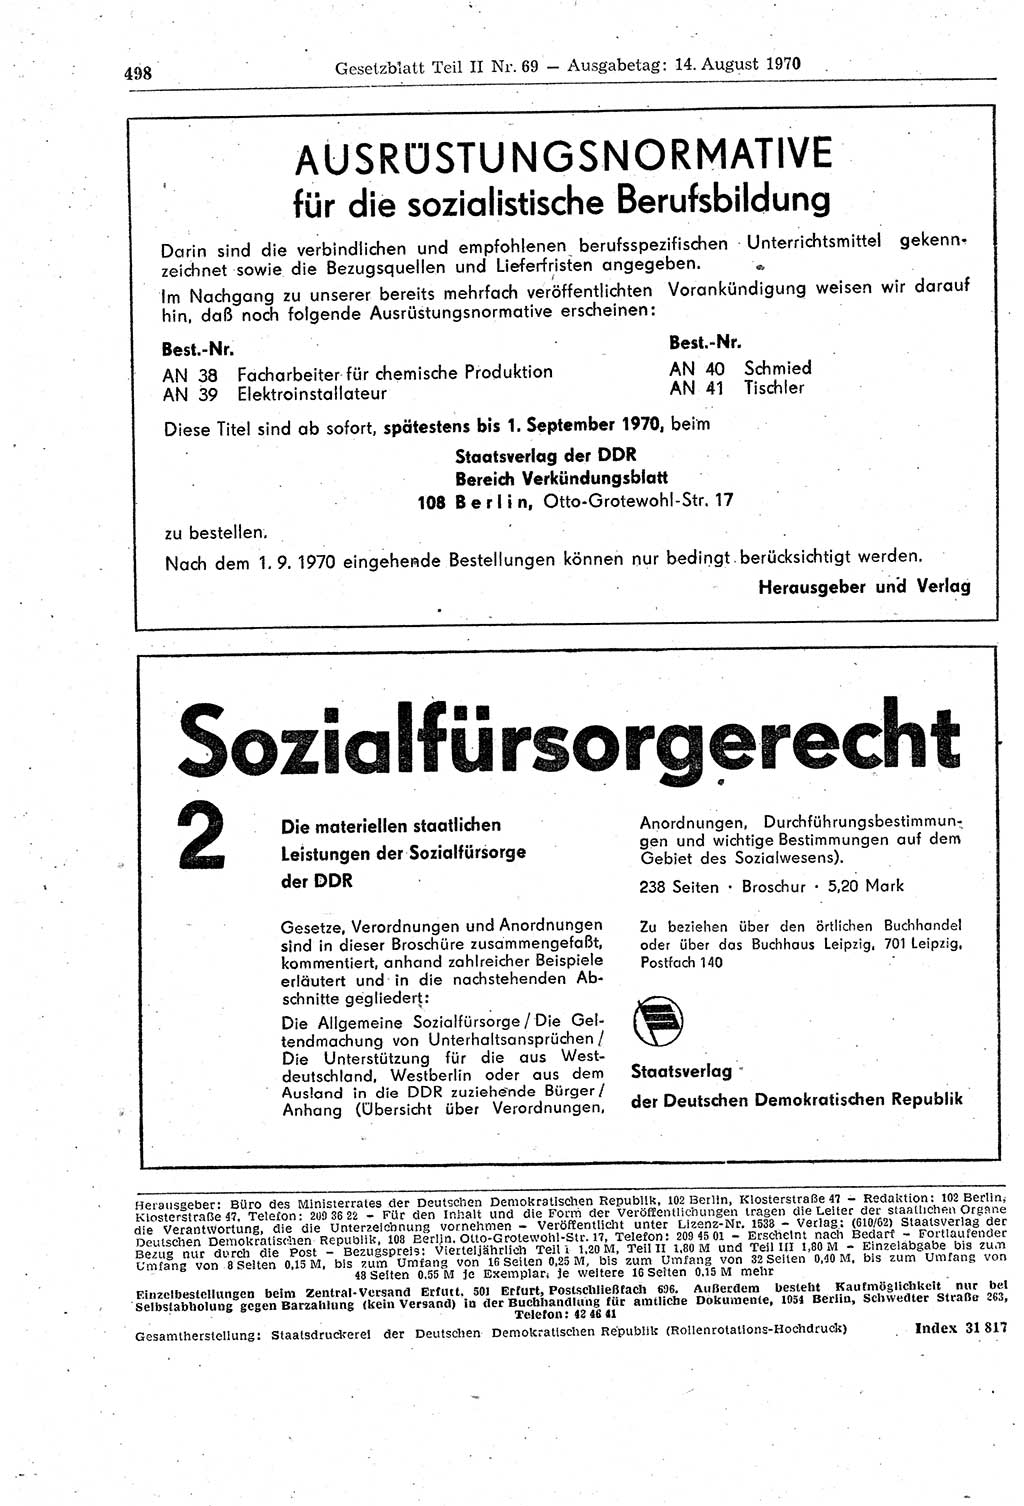 Gesetzblatt (GBl.) der Deutschen Demokratischen Republik (DDR) Teil ⅠⅠ 1970, Seite 498 (GBl. DDR ⅠⅠ 1970, S. 498)